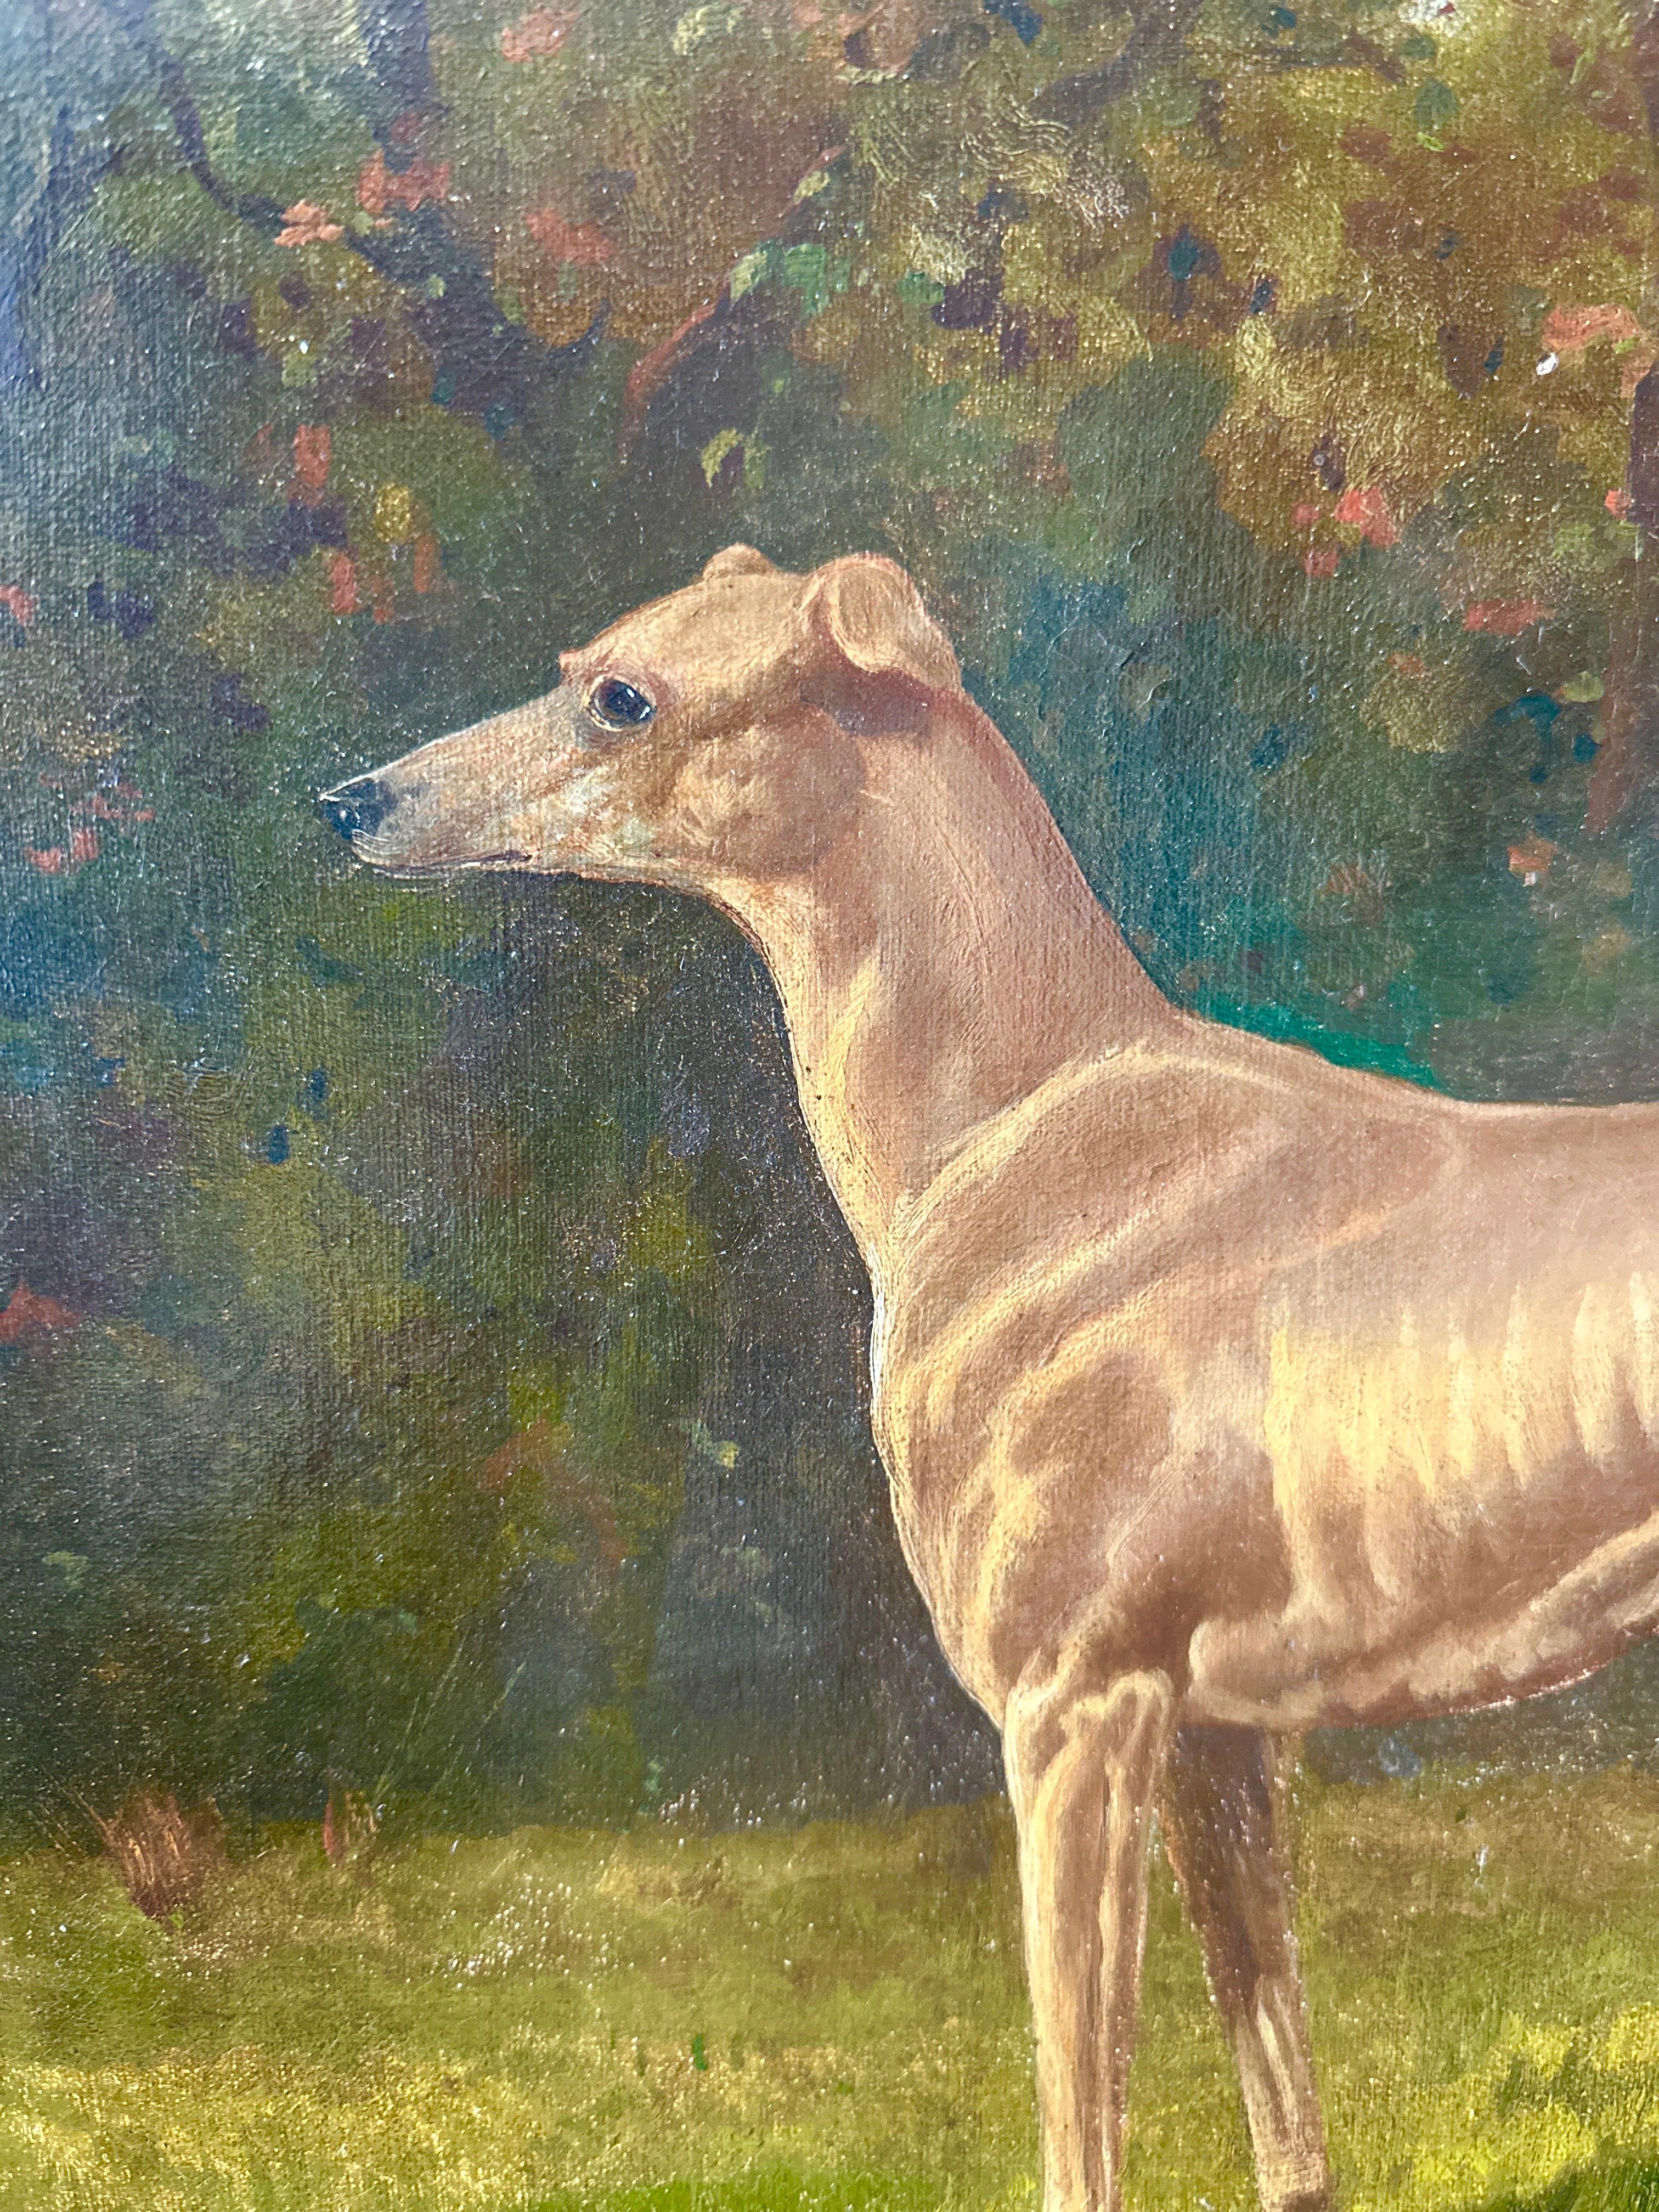 Un portrait d'un chien lévrier dans un paysage verdoyant du 19e siècle, signé - École anglaise Painting par James Albert Clark